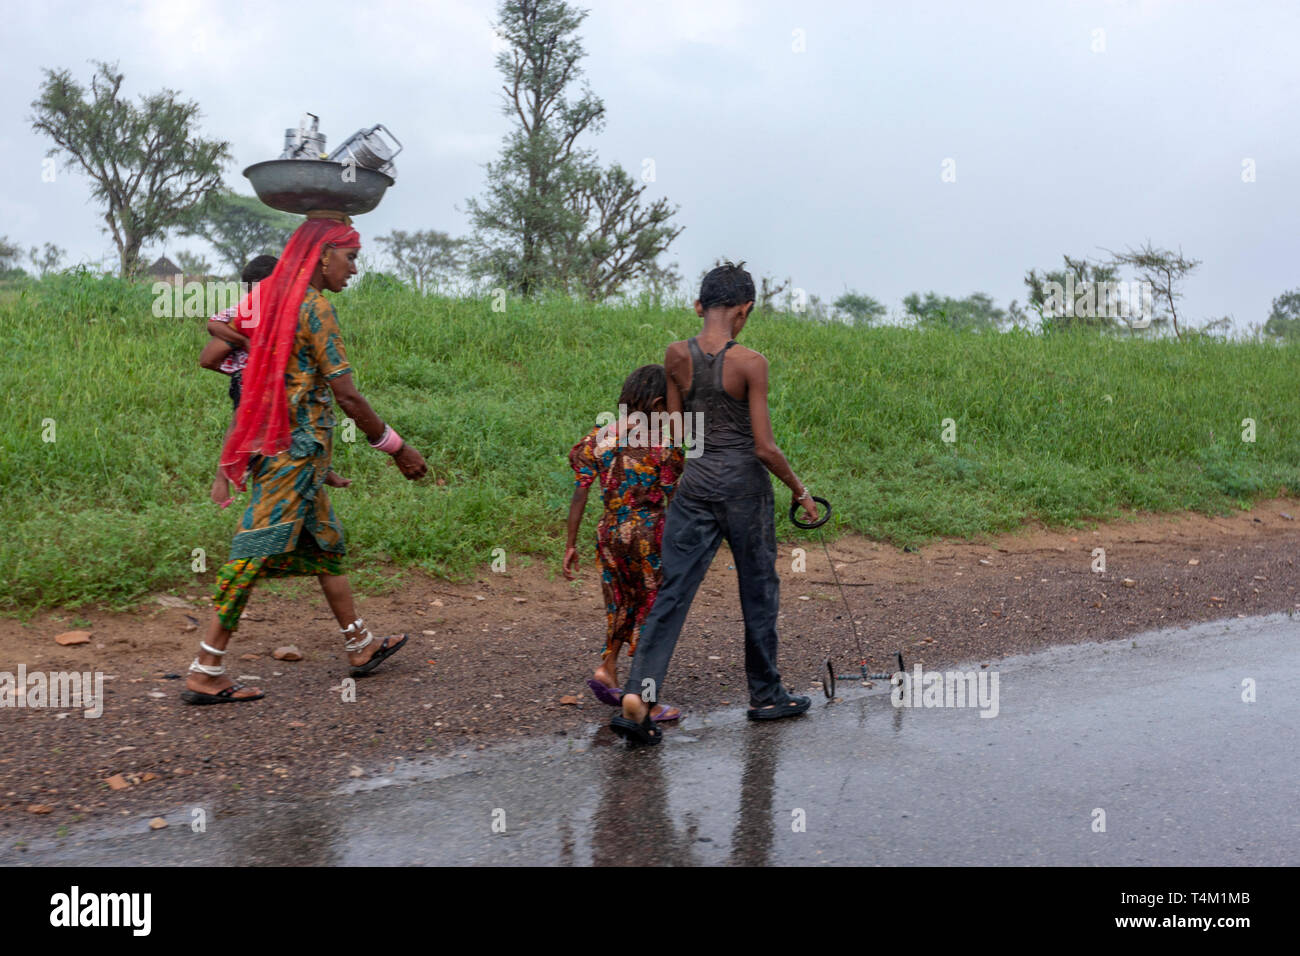 Rajasthani Frau mit seiner Familie zu Fuß entlang einer Straße unter einem starken Regen mit seinem Sohn spielen mit einem rudimentären verdrahtet Auto Spielzeug in Rajasthan, Indien Stockfoto